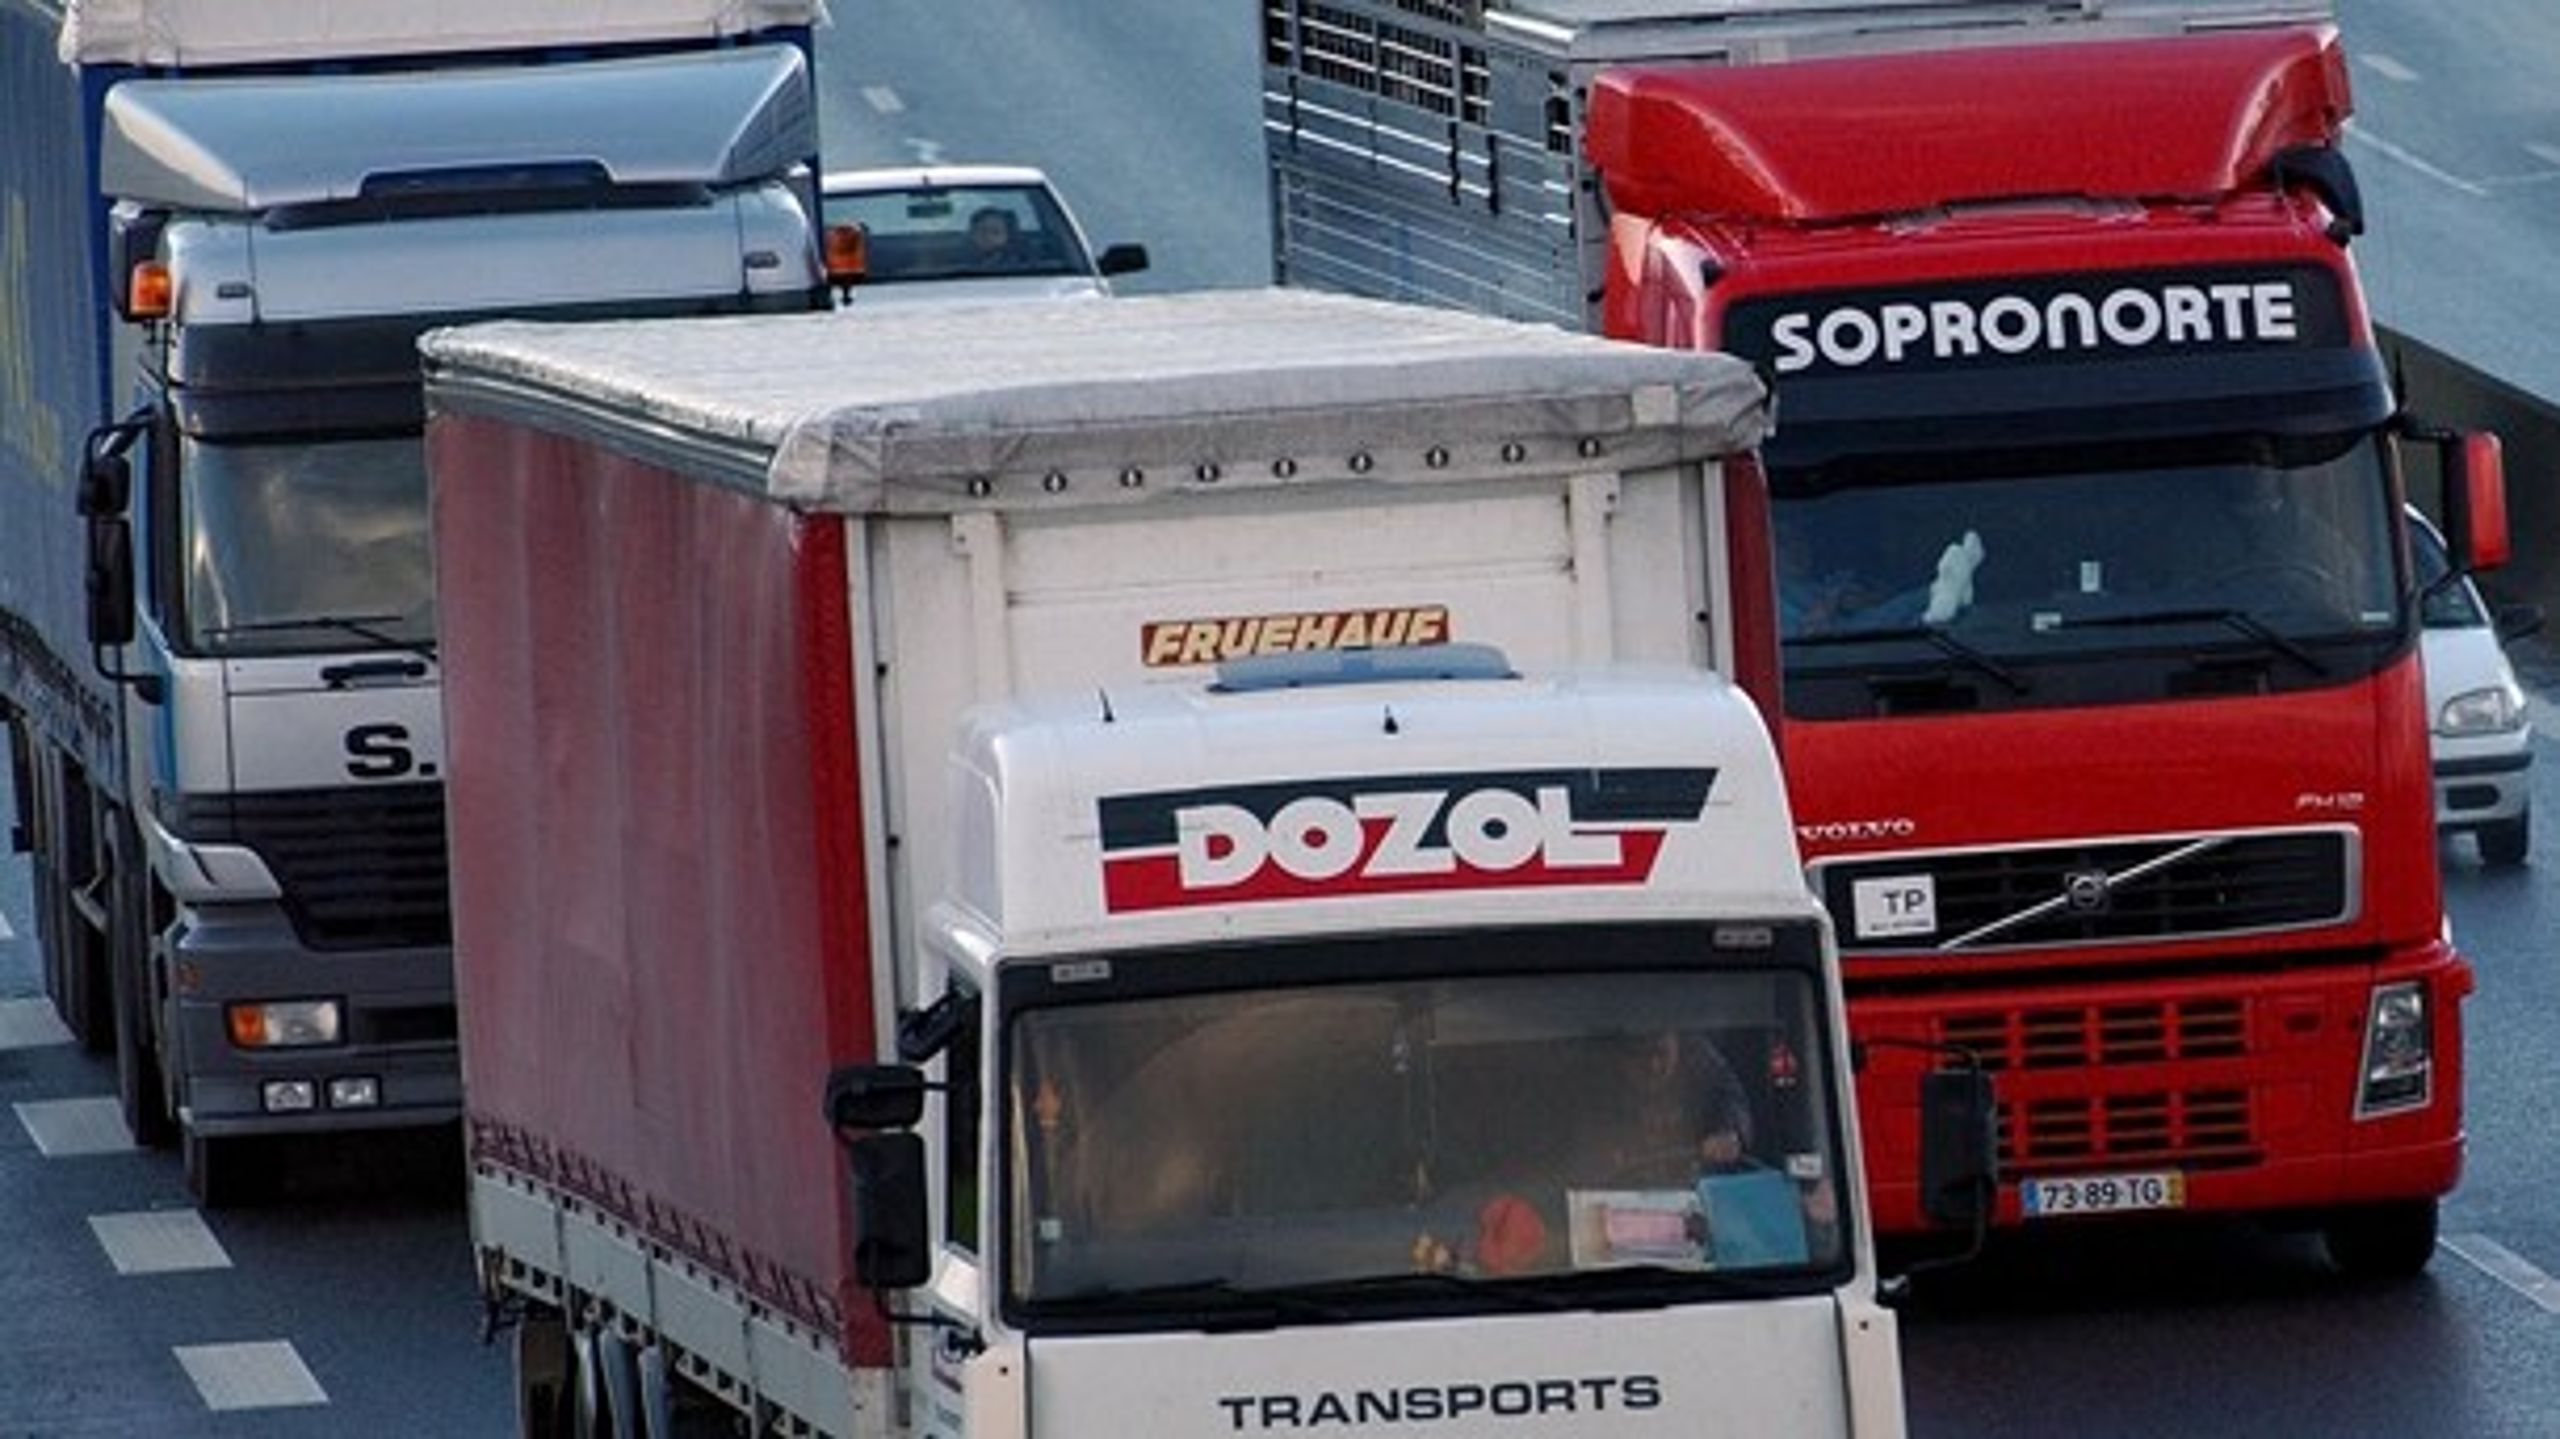 Tomgang, tomkørsel og mindre effektive lastbiler fra Østeuropa er lig med et unødig højt CO2-udslip, men vognmænd spekulerer alligevel i det, mener DTL-Danske Vogmænd.